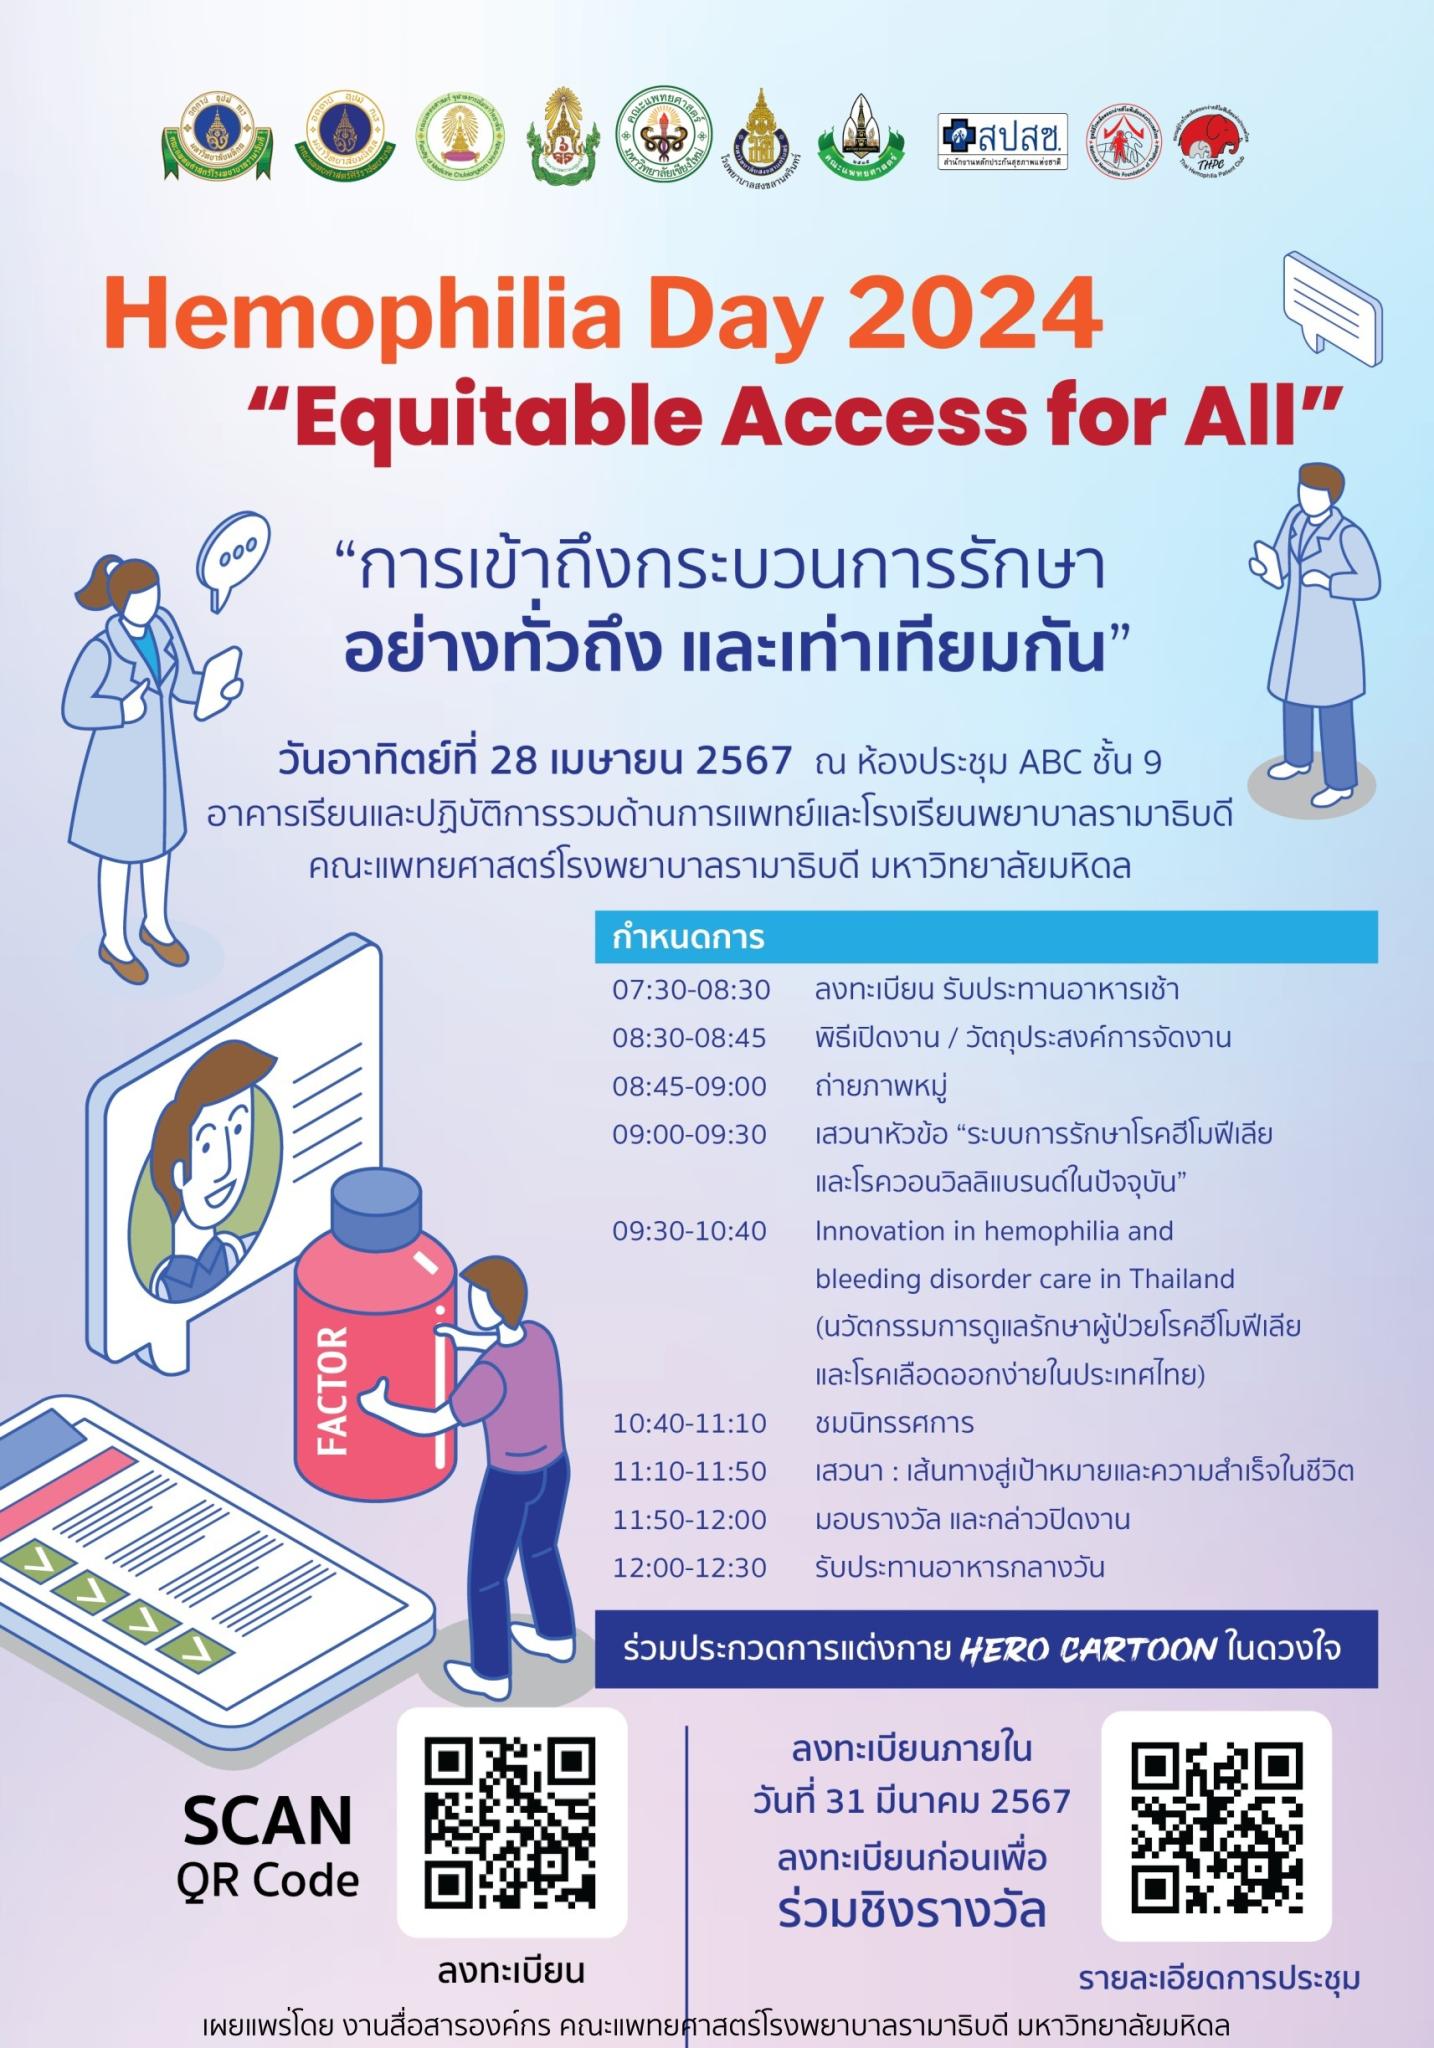 Hemophilia Day 2024 “Equitable Access for All” “การเข้าถึงกระบวนการรักษา อย่างทั่วถึง และเท่าเทียมกัน”